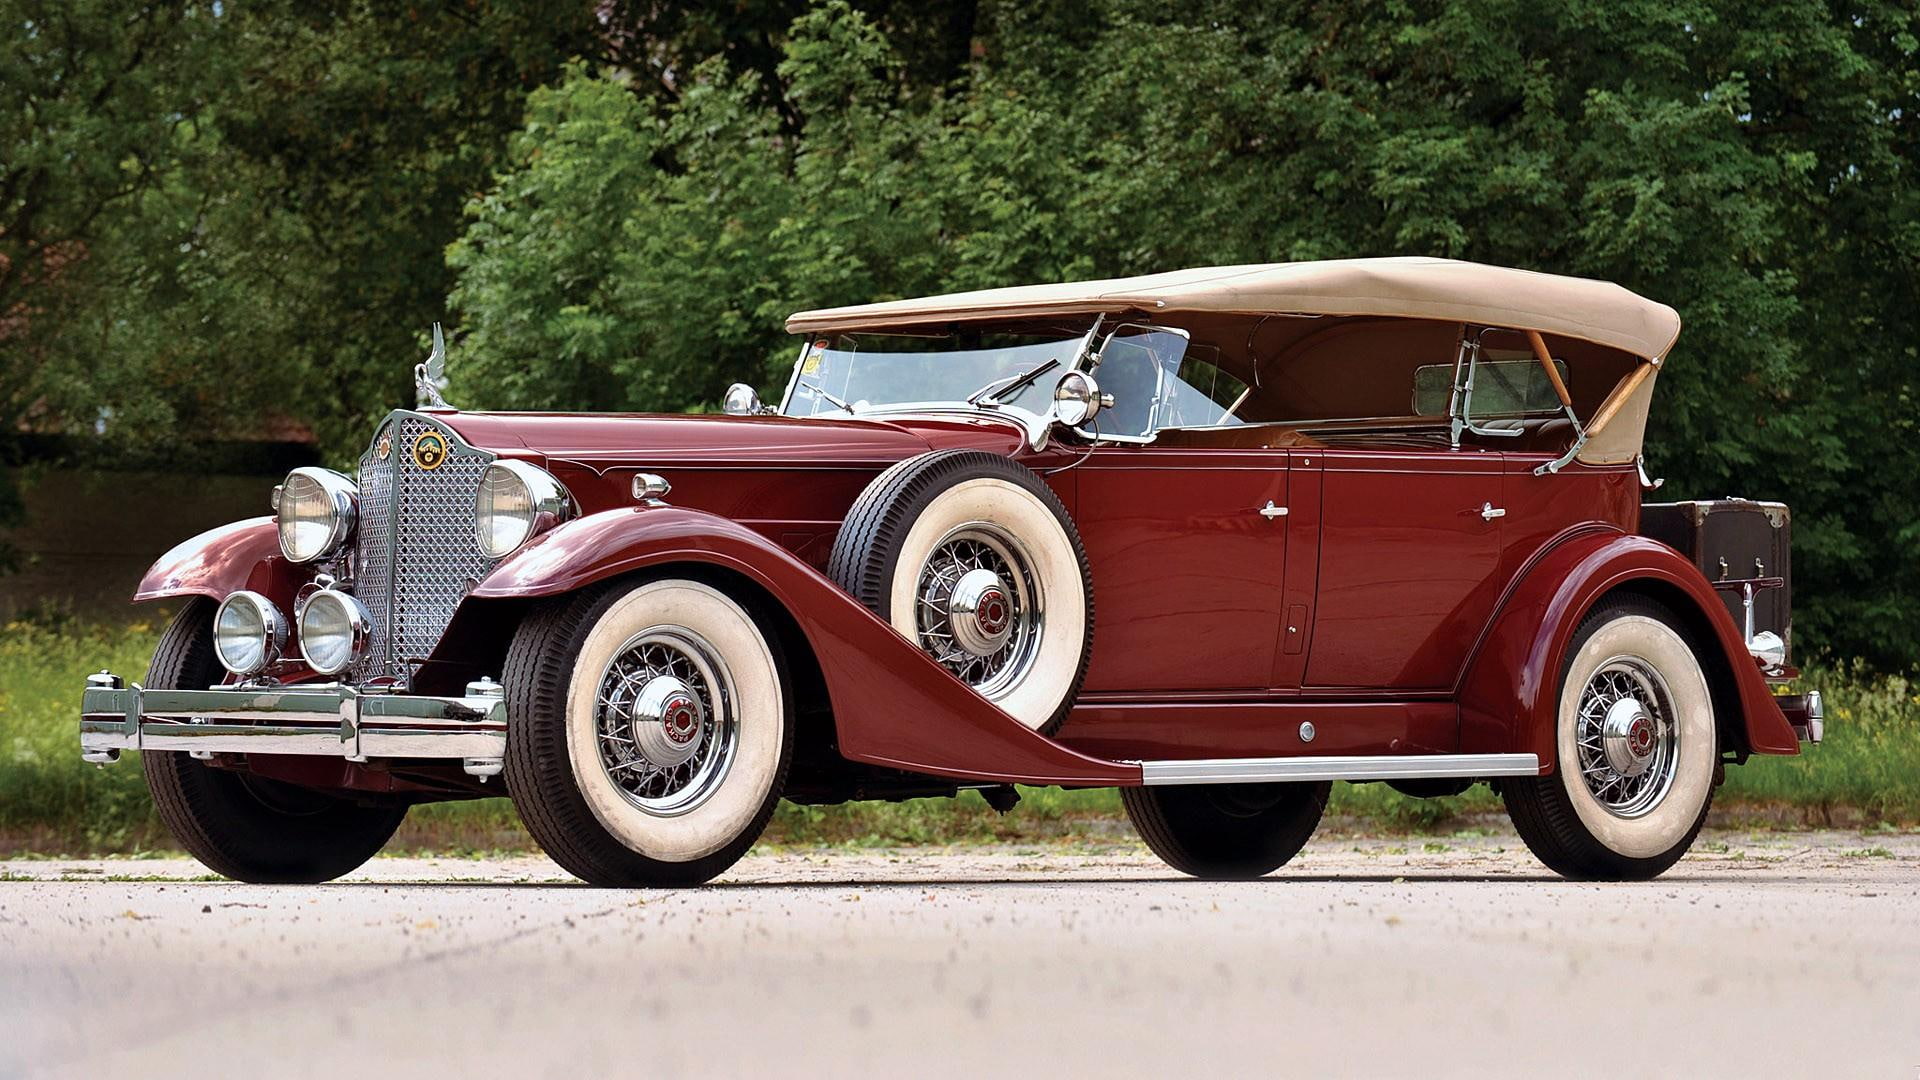 1933 Packard Twelve Sport Phaeton, convertible, vintage, elegant